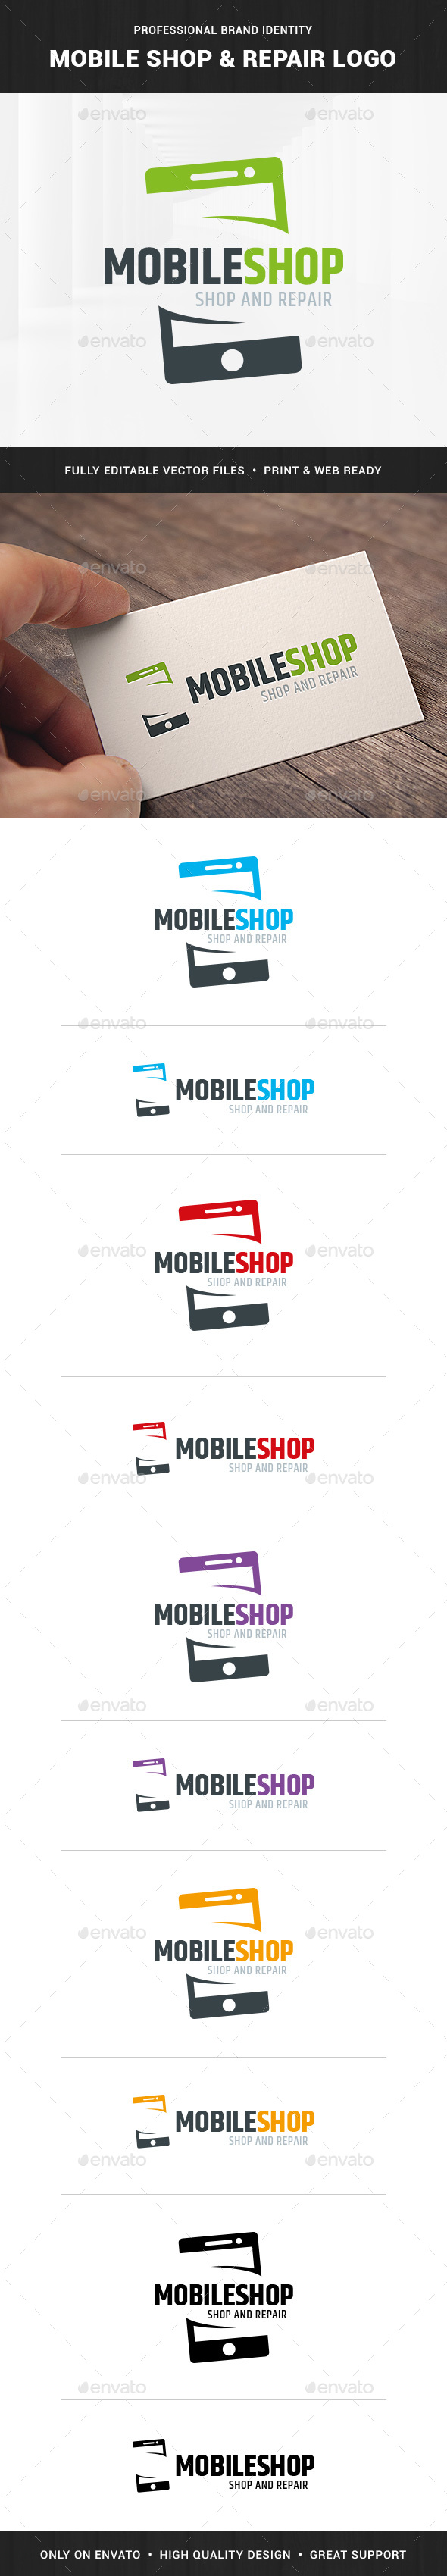 Mobile Shop & Repair Logo